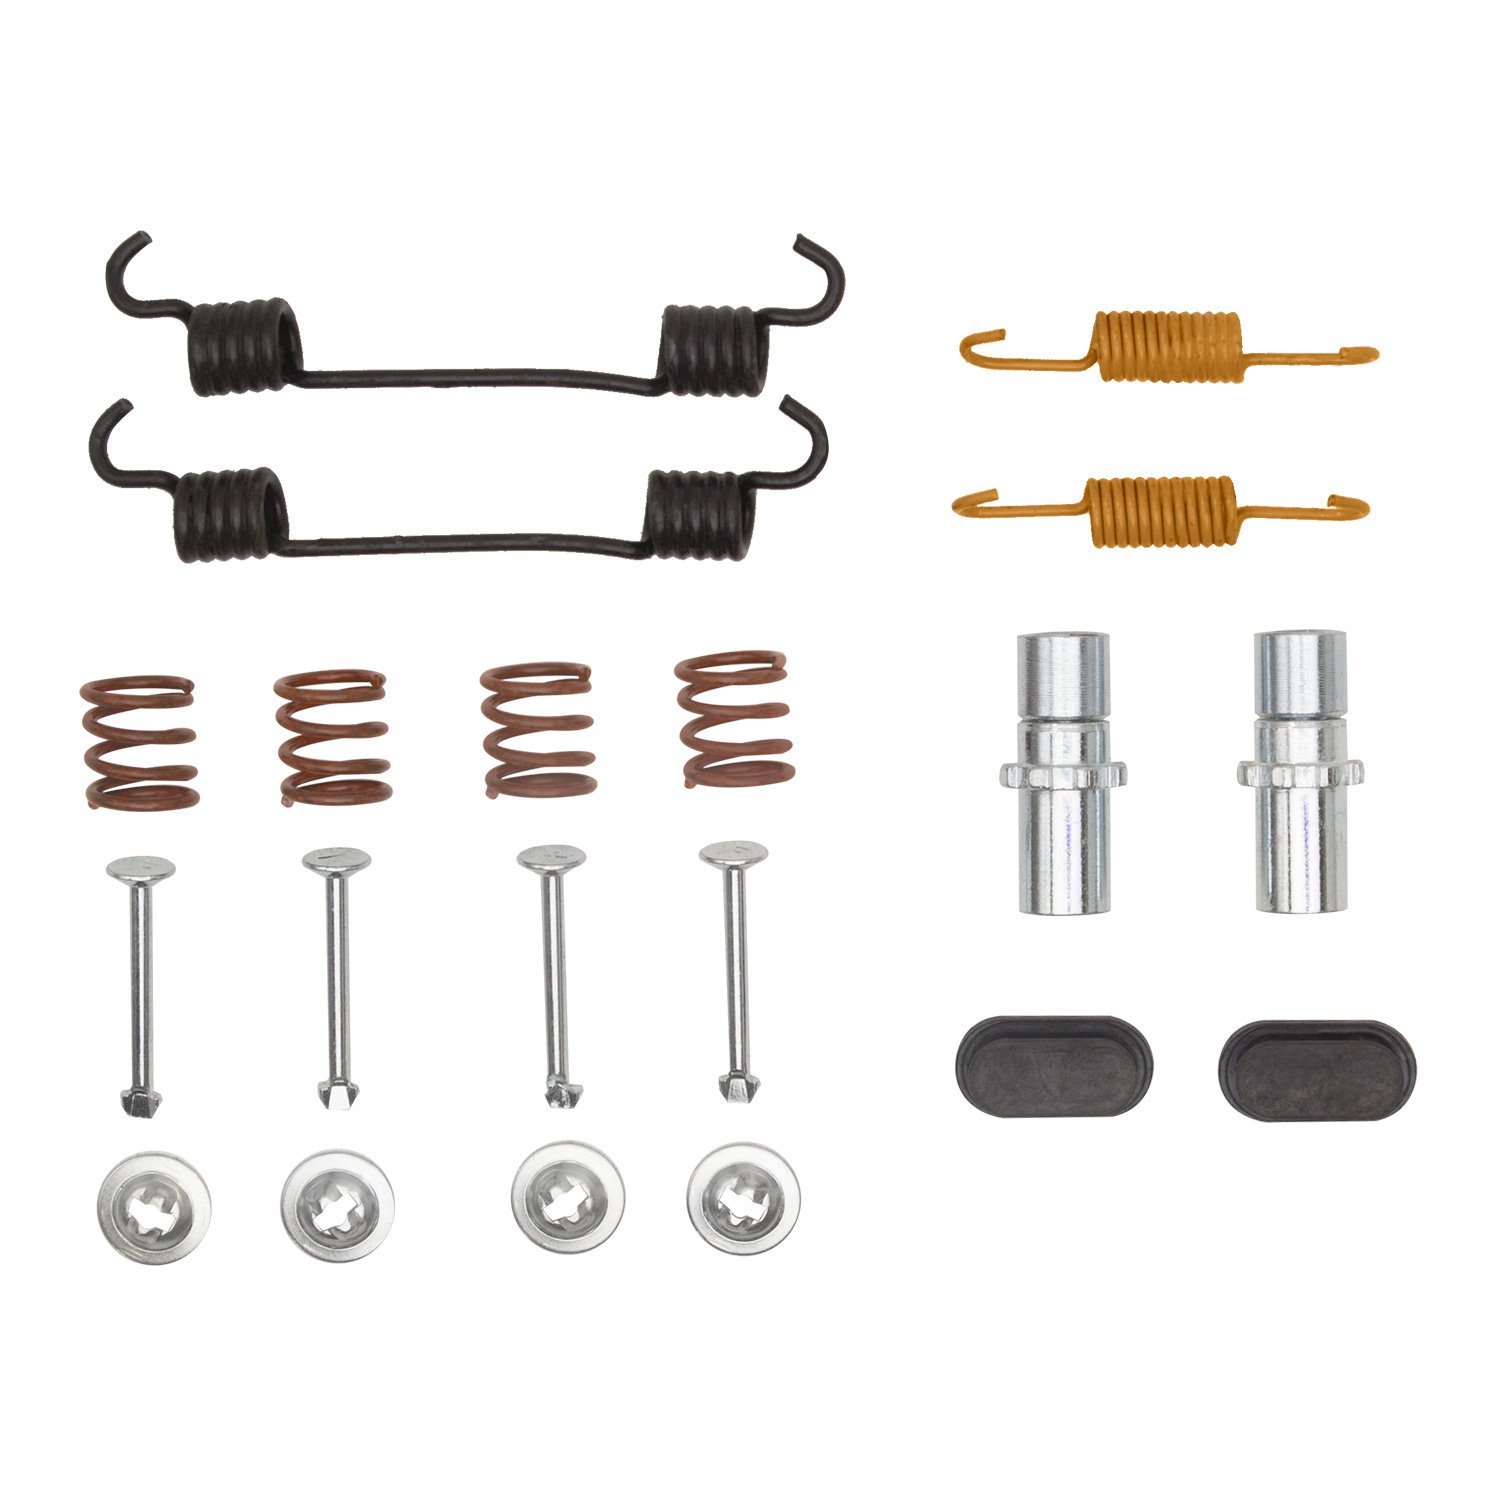 370-47050 Drum Brake Hardware Kit, 2015-2020 GM, Position: Parking